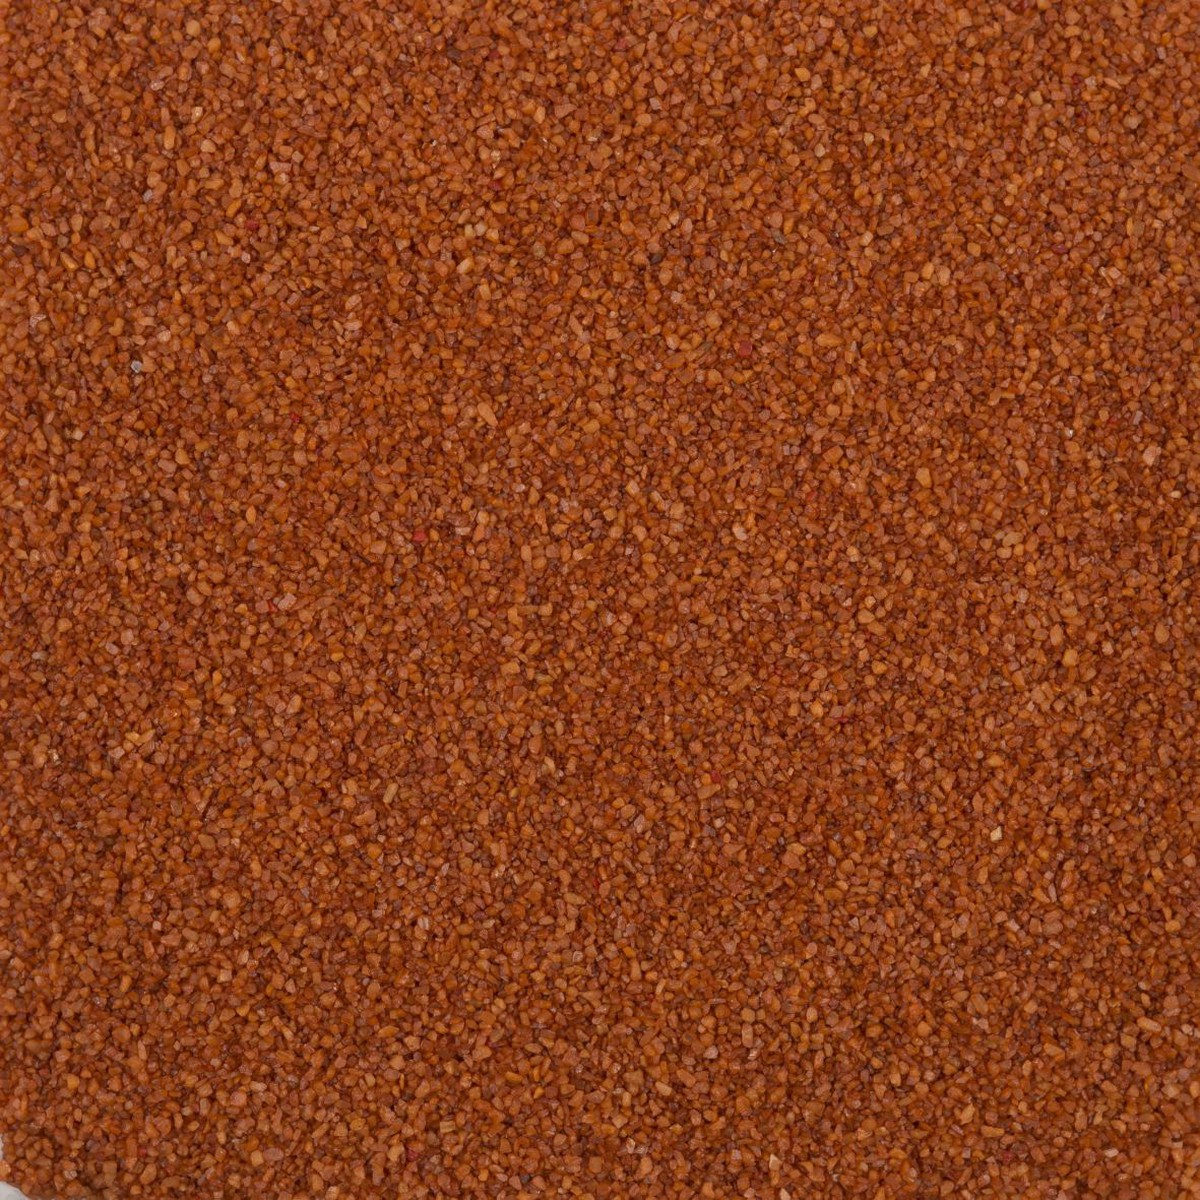   Sable coloré Terracotta Brun terre de Sienne brulée 550ml 0.5mm